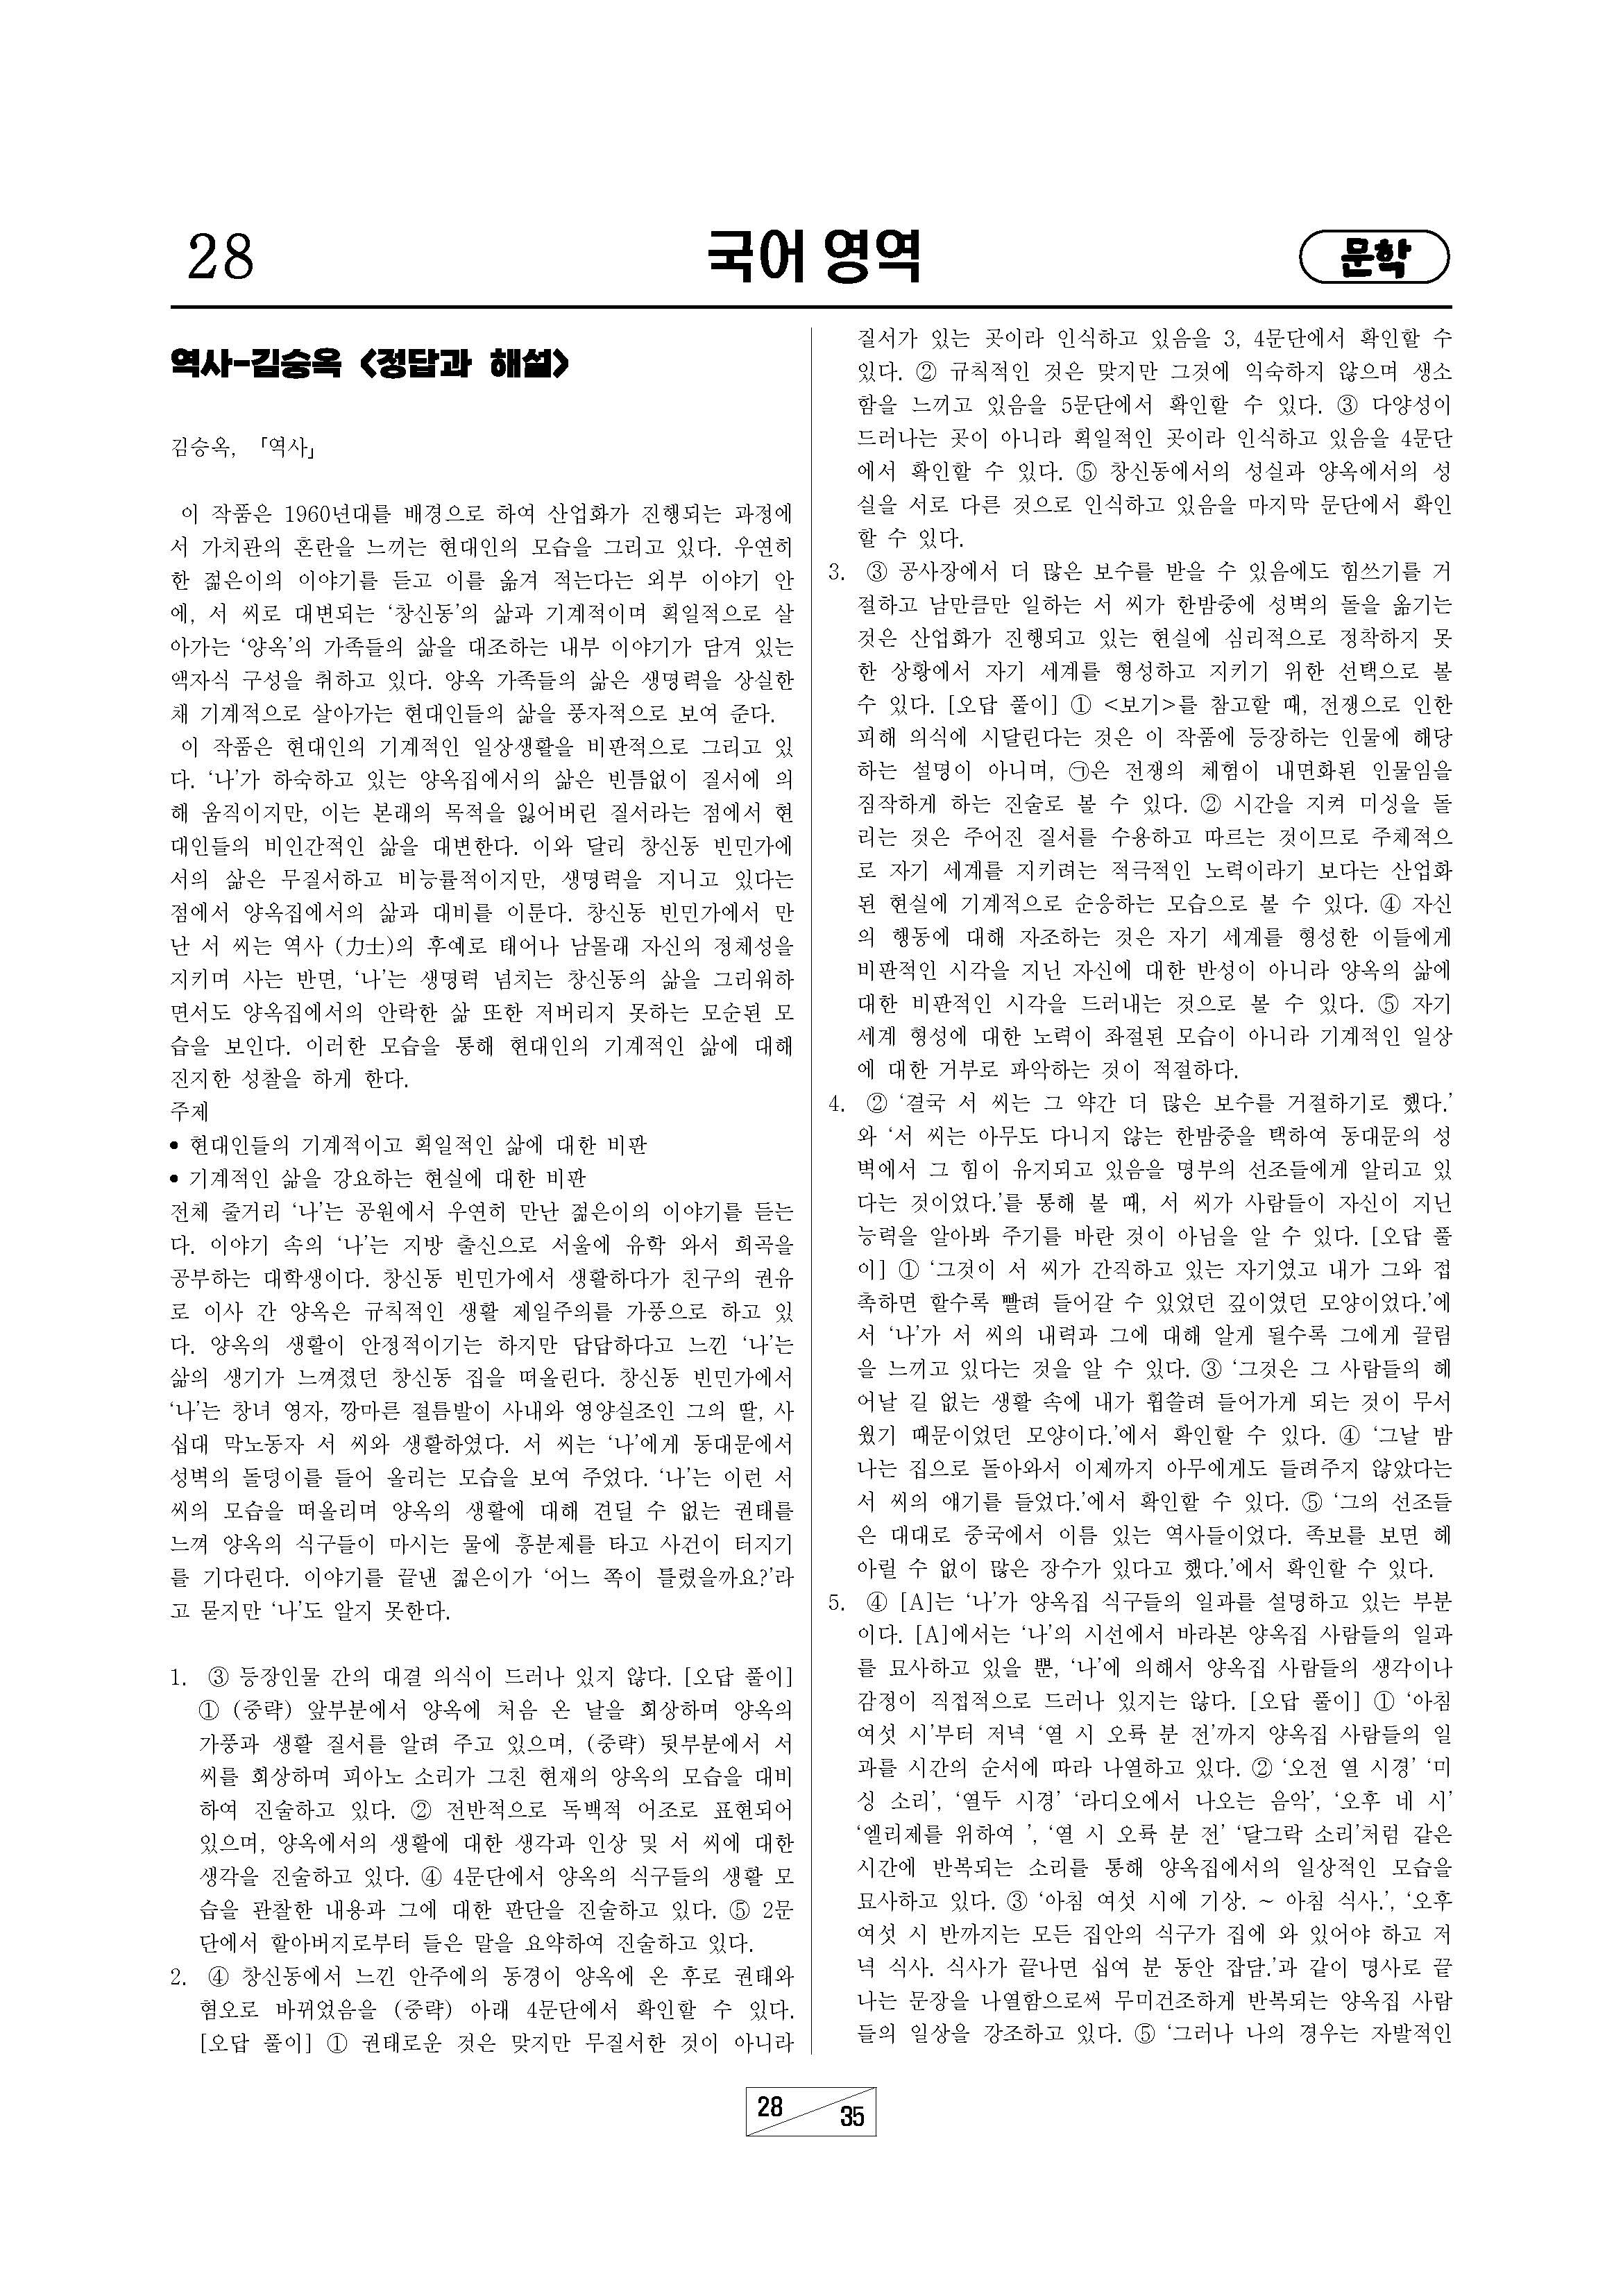 김승옥-역사-91문제-정답과해설